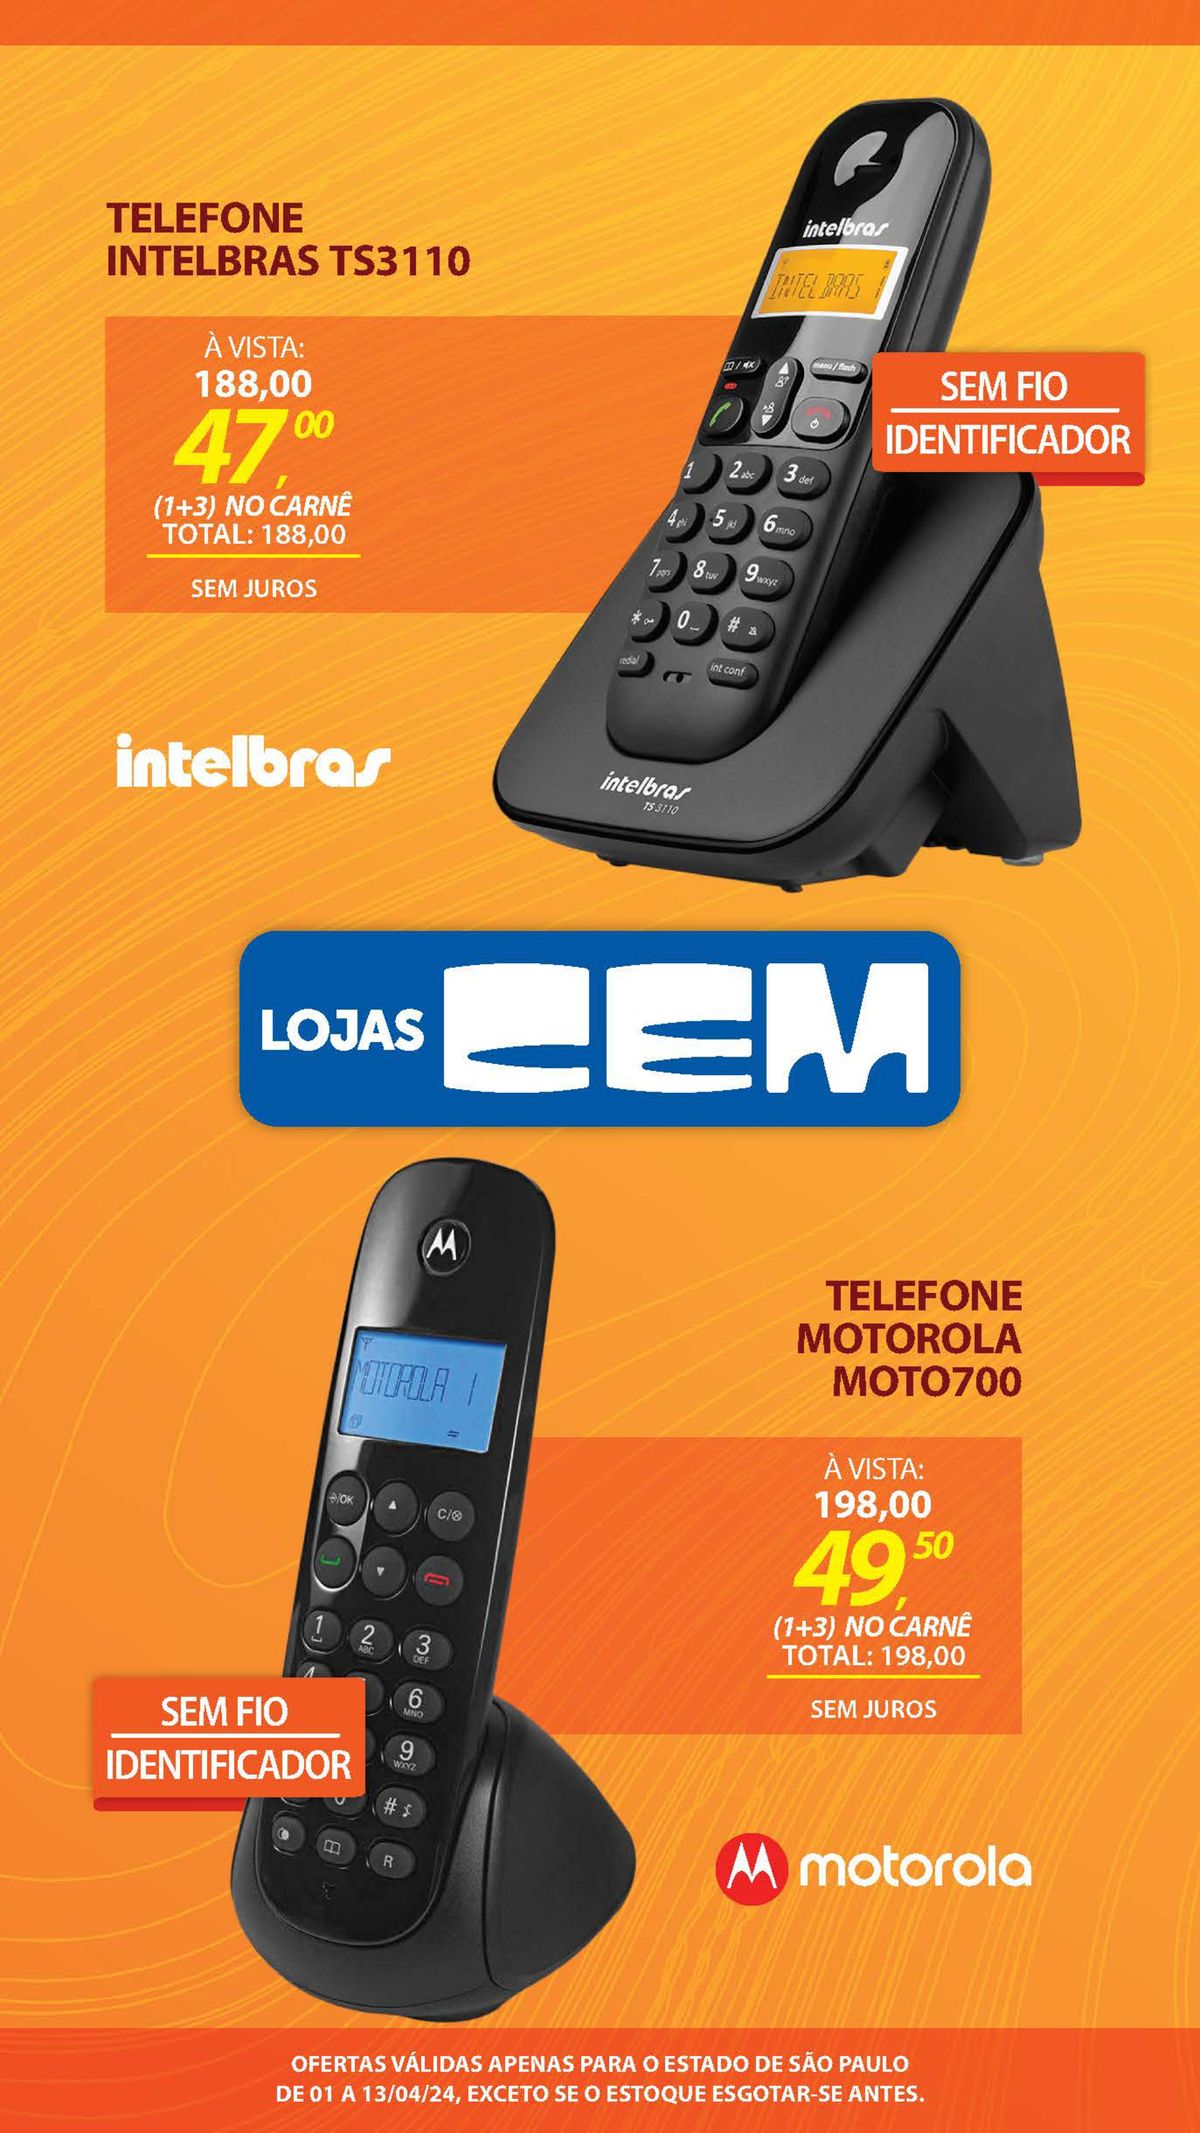 Telefones sem fio Intelbras TS3110 e Motorola Moto700 em promoção!